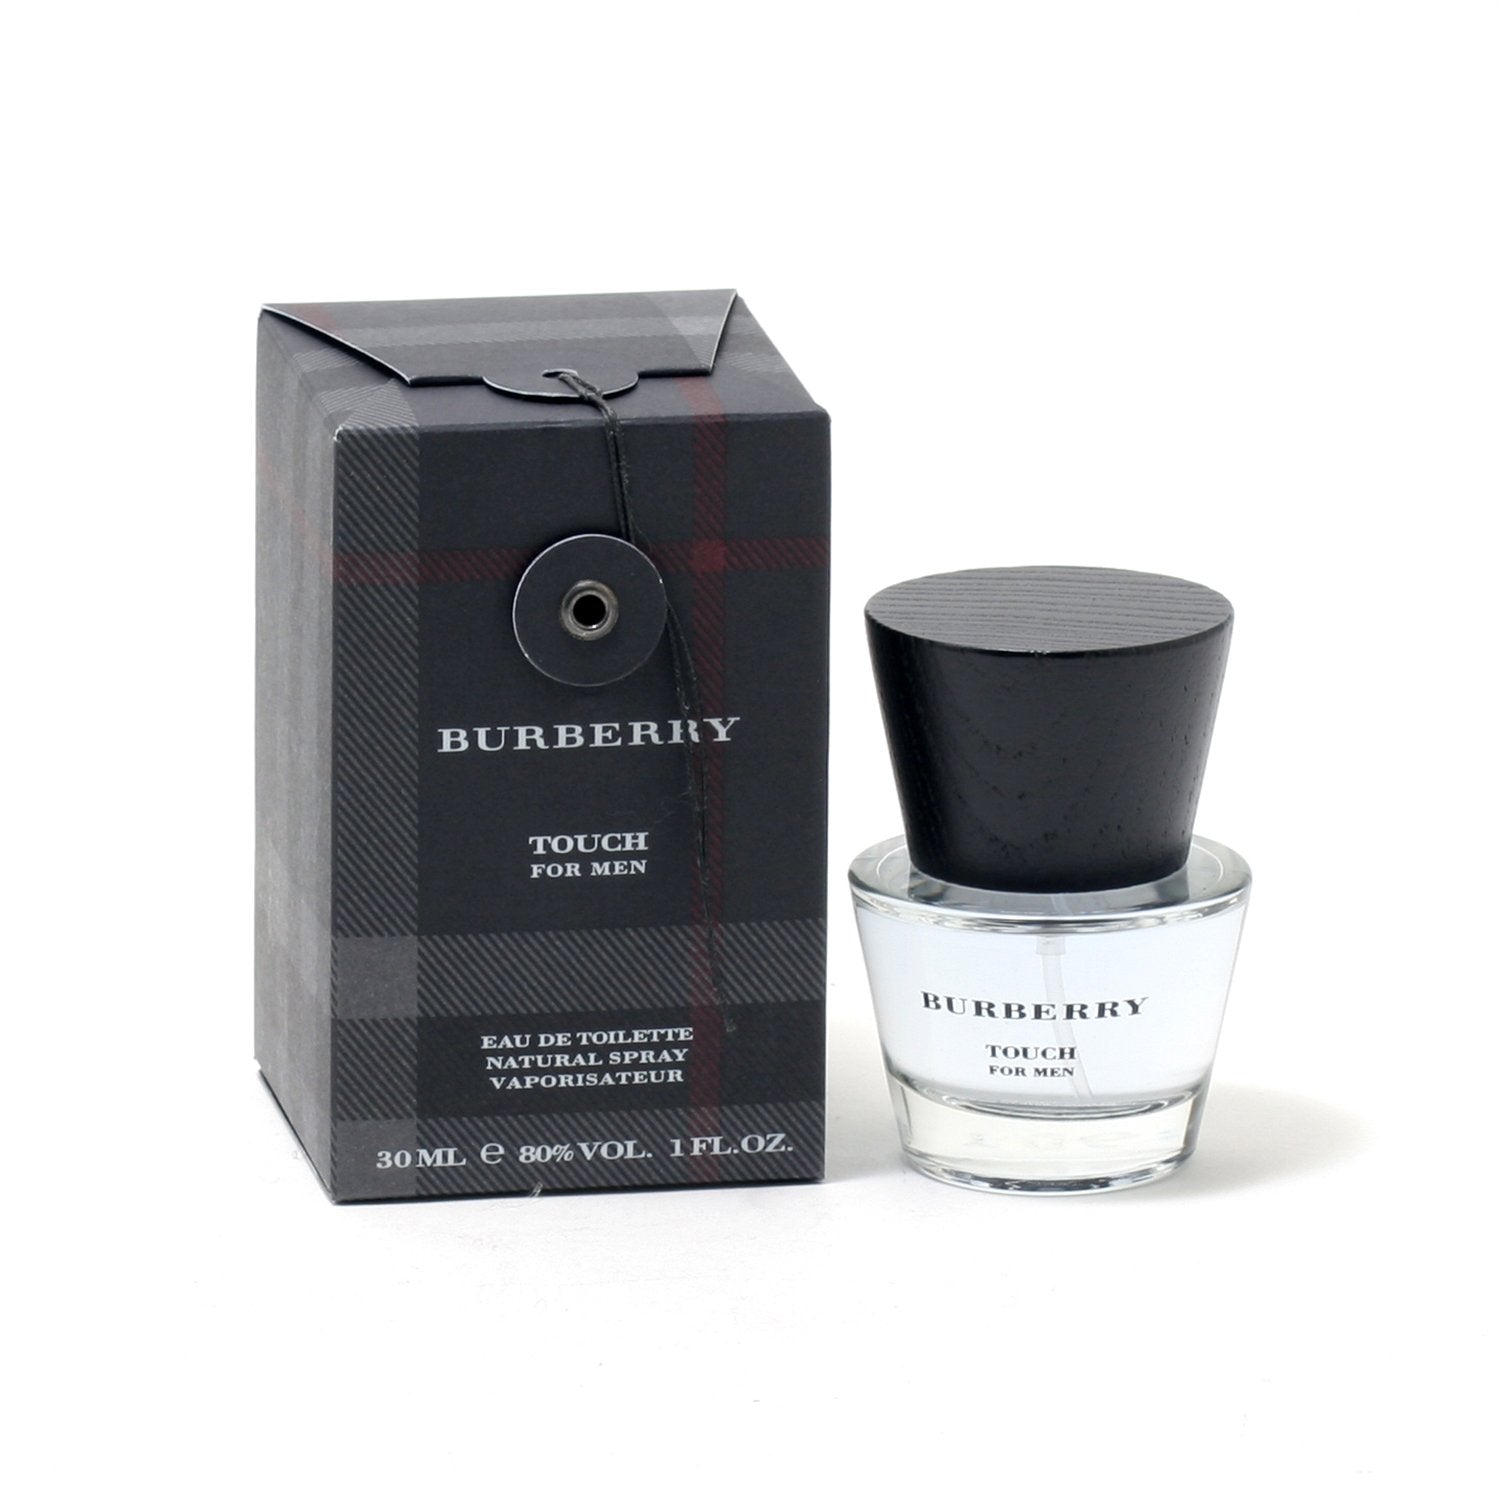 BURBERRY TOUCH FOR MEN - EAU DE TOILETTE SPRAY – Fragrance Room